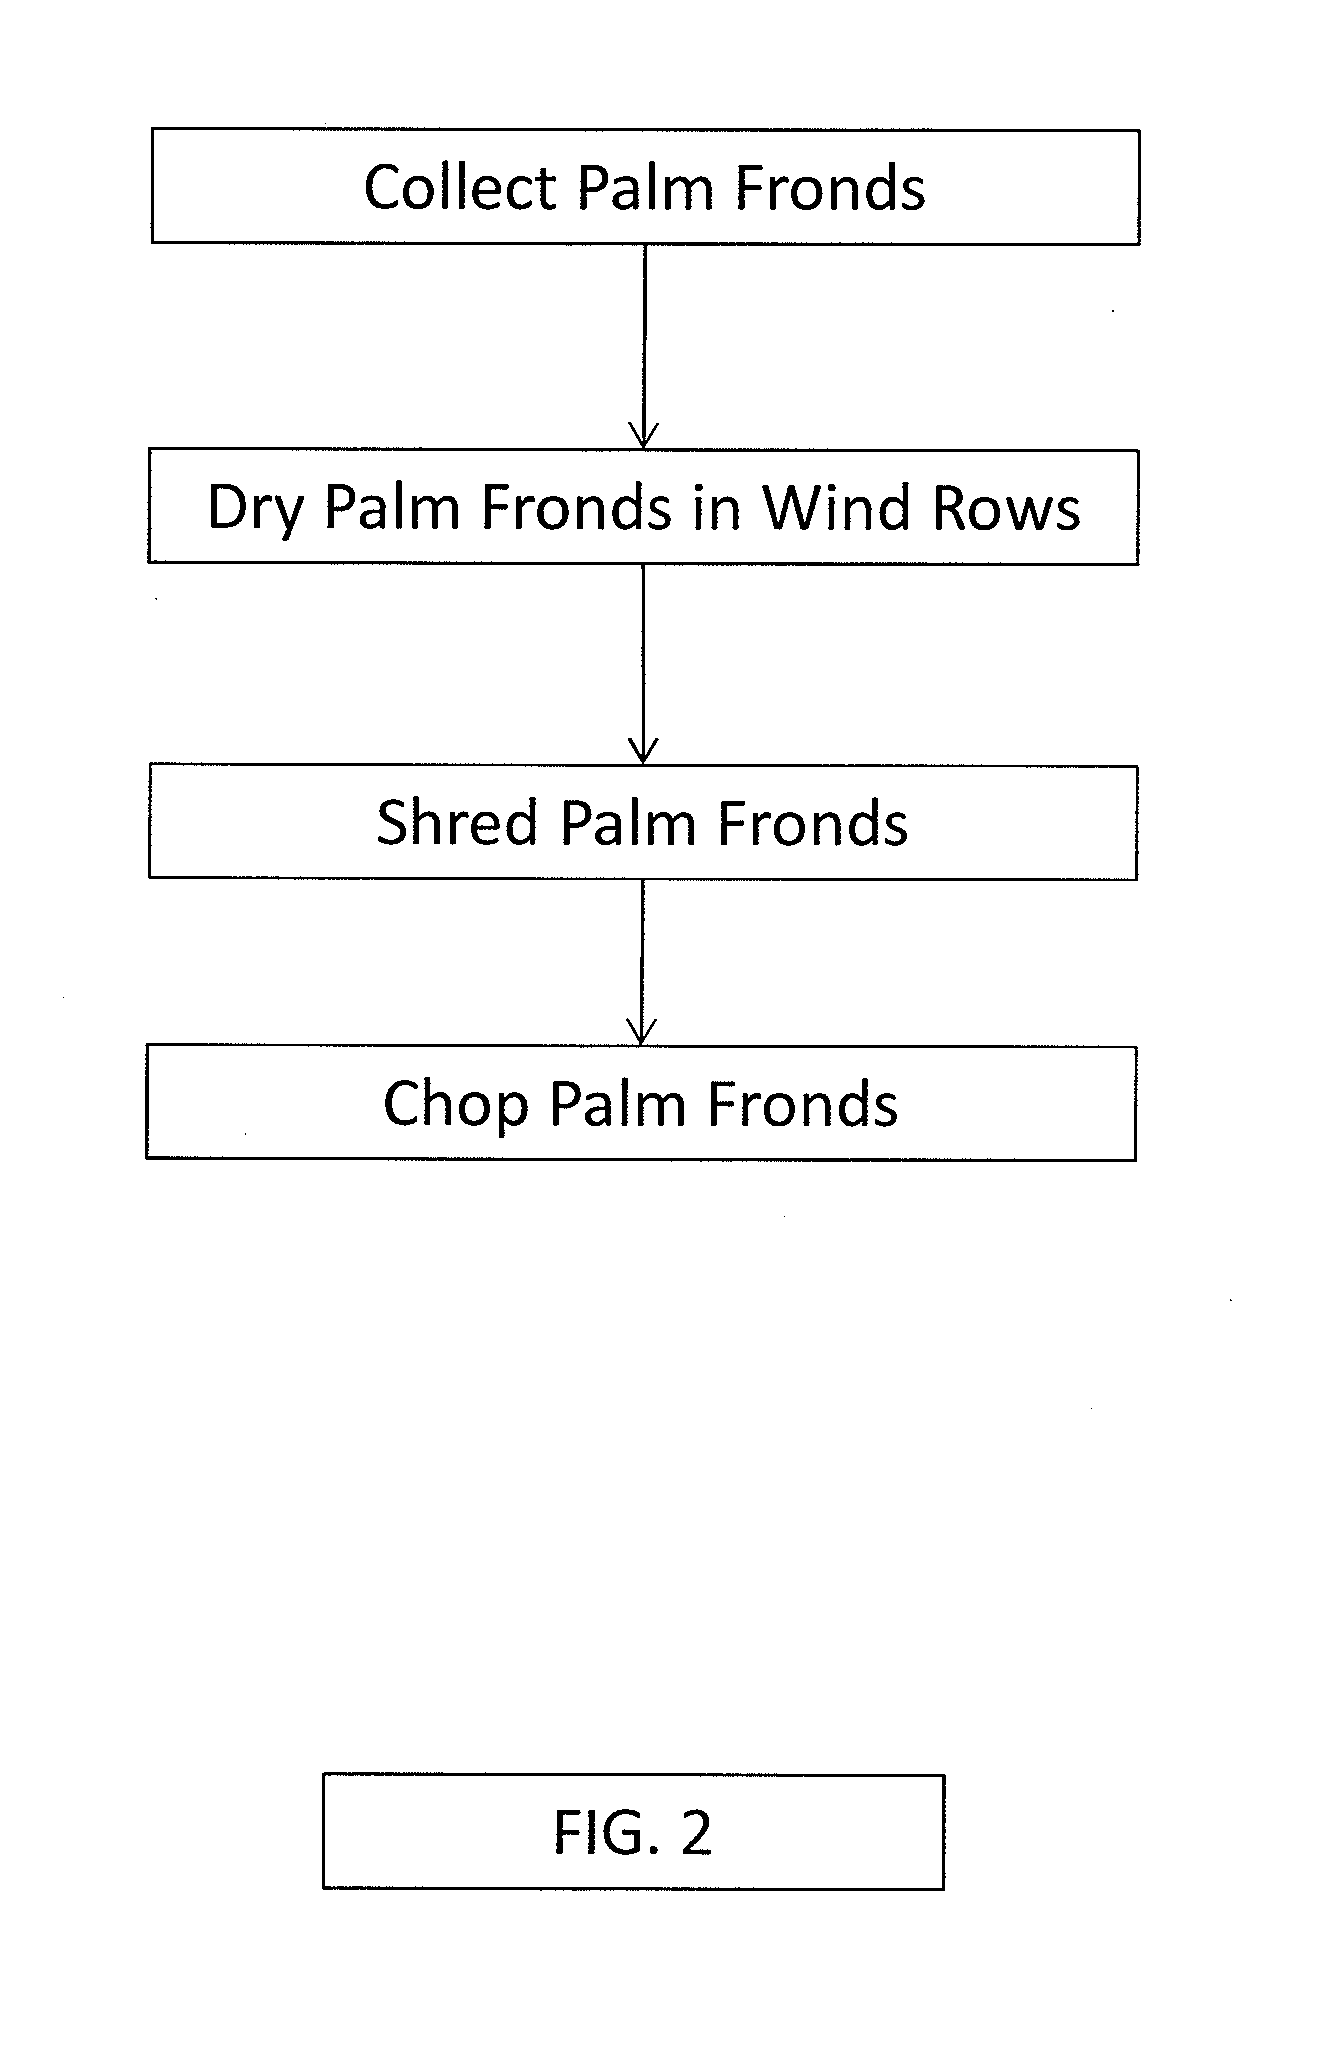 Palm-based animal feed